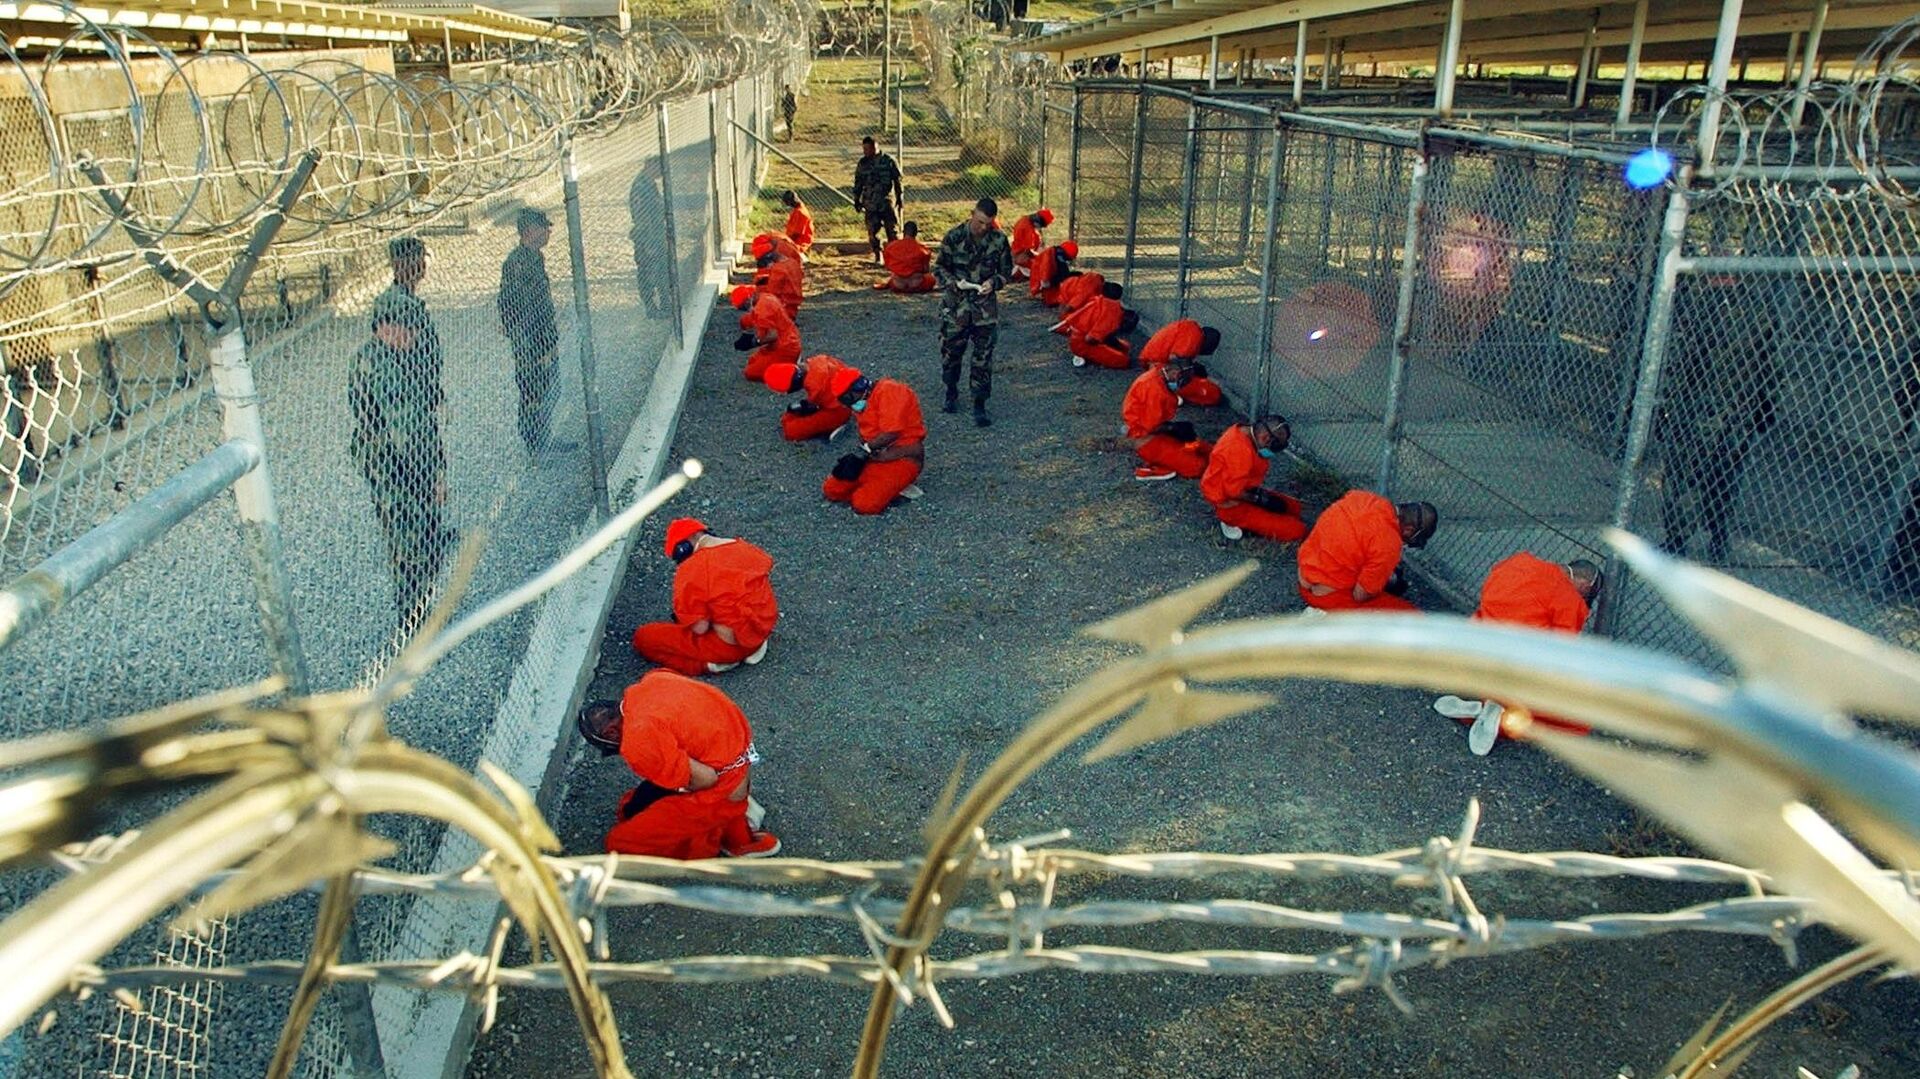 гуантанамо на кубе